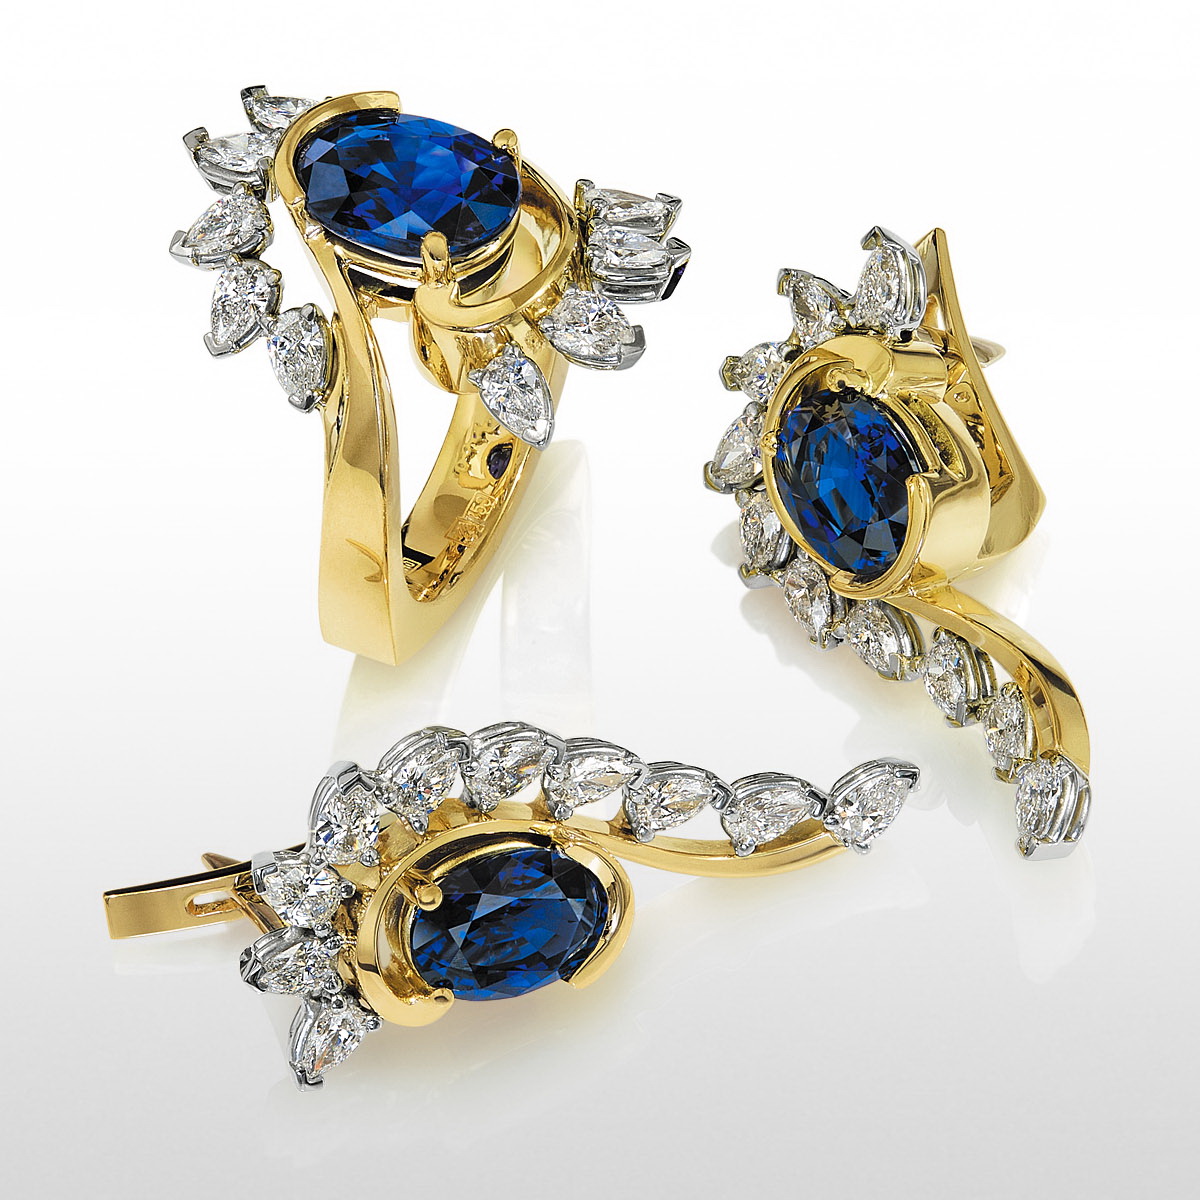 Jewelry Photography. Diamond Jewelry. Royal Gems